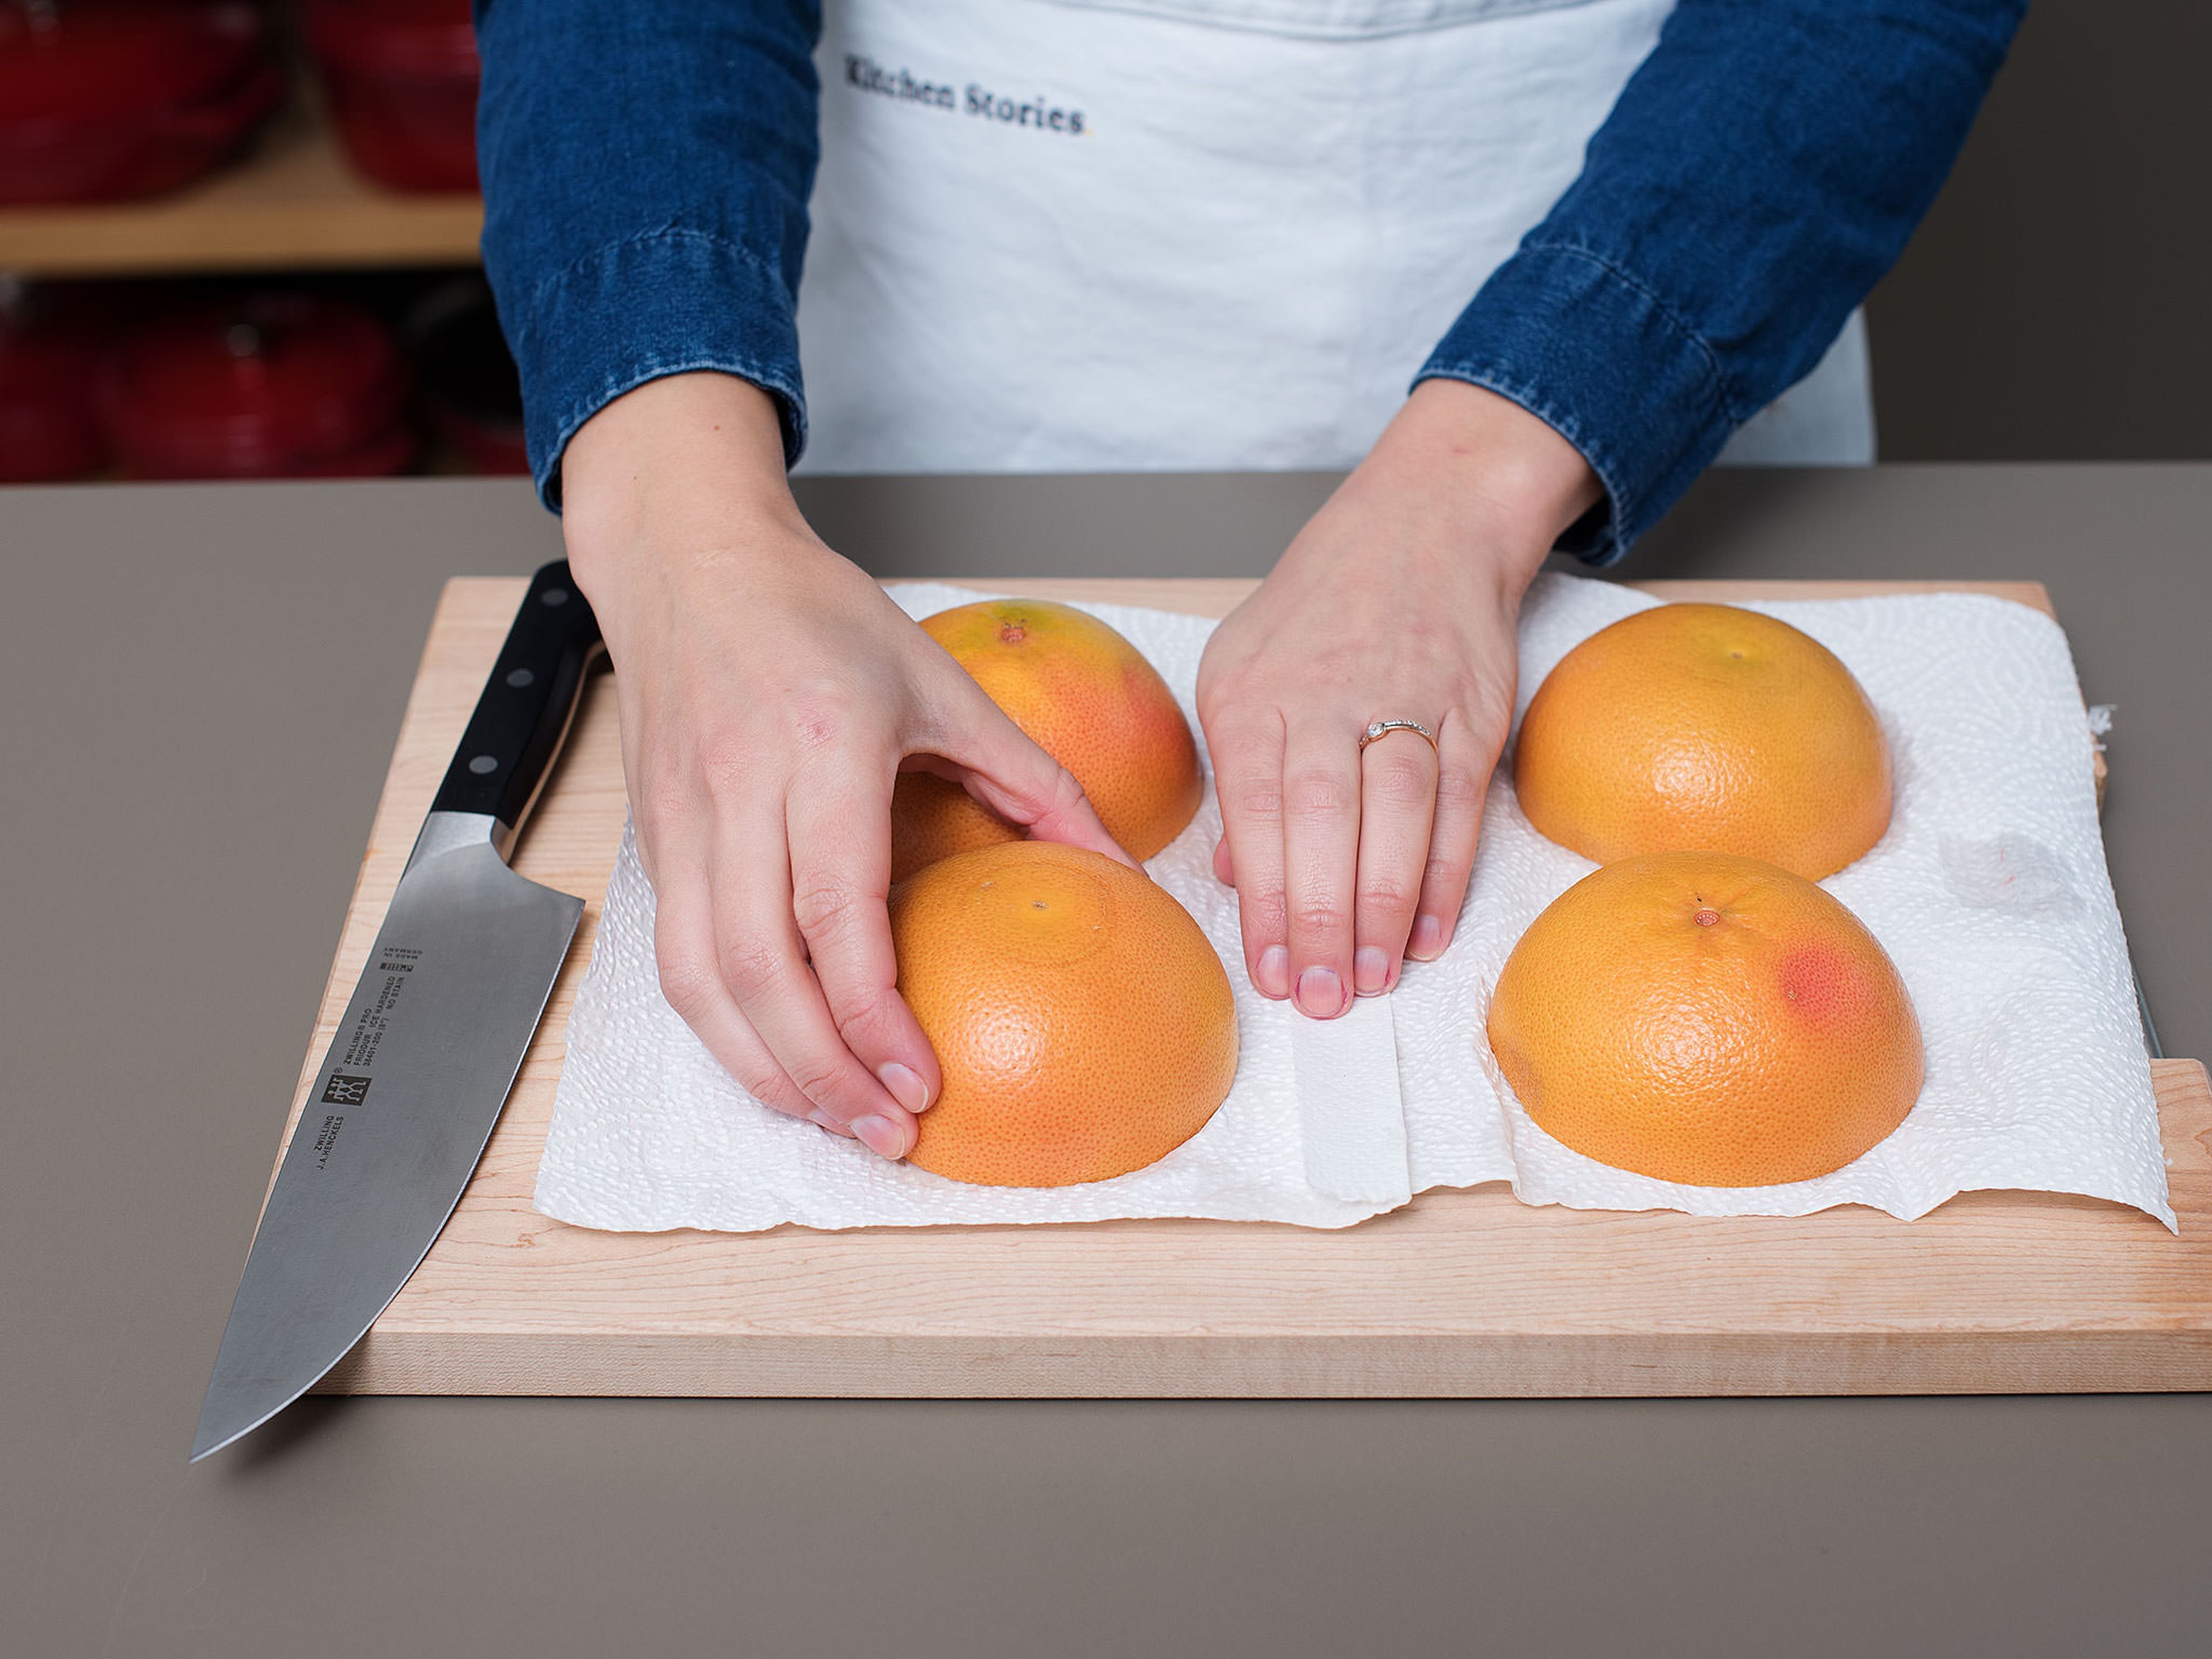 Die Grillfunktion des Backofens vorheizen. Grapefruits halbieren und falls nötig ca. 1 cm vom Boden abschneiden, damit die Grapefruits stabil stehen. Die einzelnen Grapefruitfilets einritzen, um sie zu lösen und später einfacher essen zu können. Die Grapefruithälften mit der Schnittseite nach unten ca. 5 Min. auf Küchenpapier legen um der Oberfläche Flüssigkeit zu entziehen.